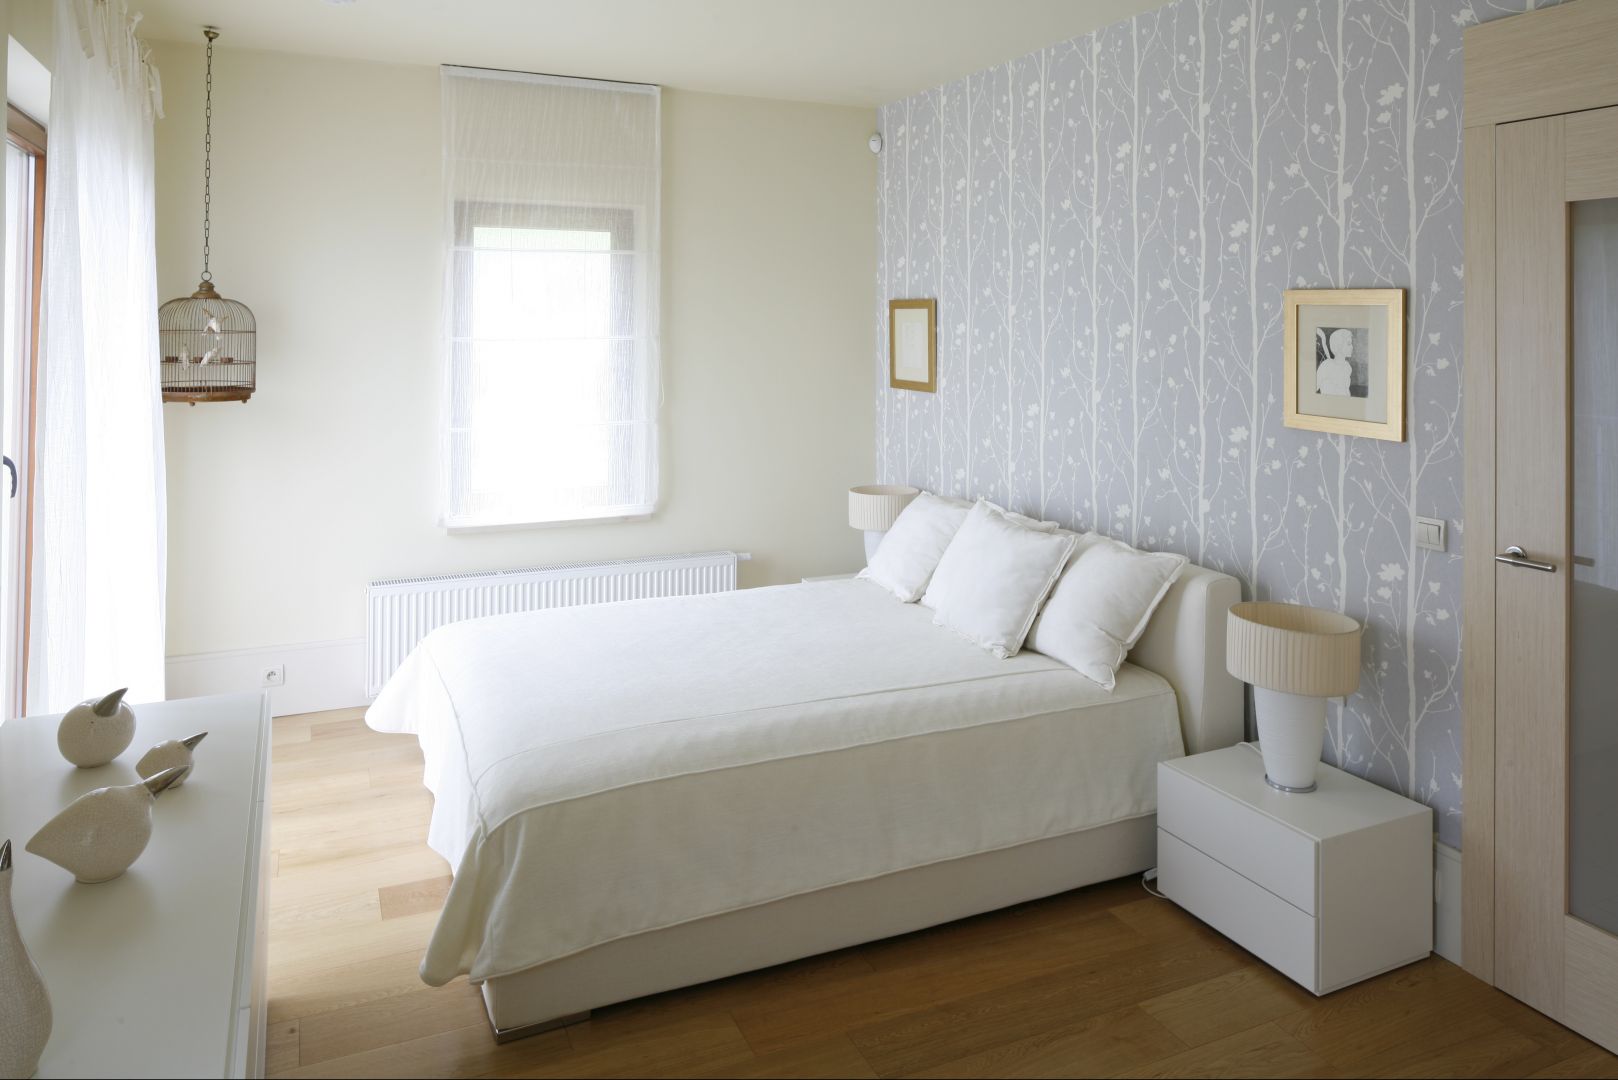 Białe łóżko usytuowane centralnie na największej ścianie w sypialni, która jednocześnie stanowi najbardziej widoczny element w pokoju, ponieważ została udekorowana tapetą. Projekt: Małgorzata Borzyszkowska. Fot.Bartosz Jarosz